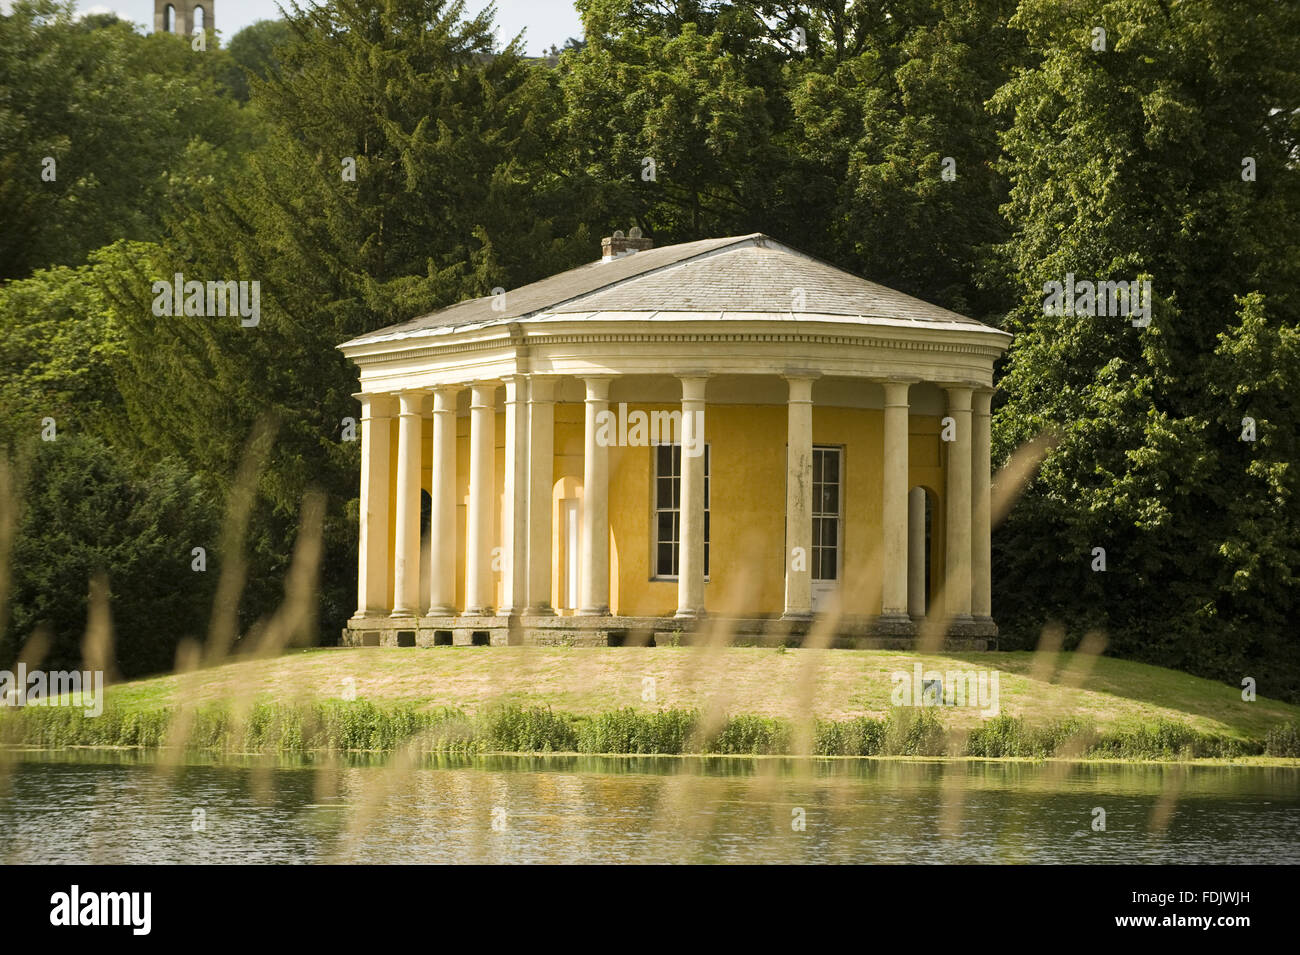 El Templo de la música en una isla en el lago en West Wycombe Park, Buckinghamshire. El templo tiene una columnata de estilo dórico, y fue diseñado por Nicholas Revett en los 1770s. Foto de stock